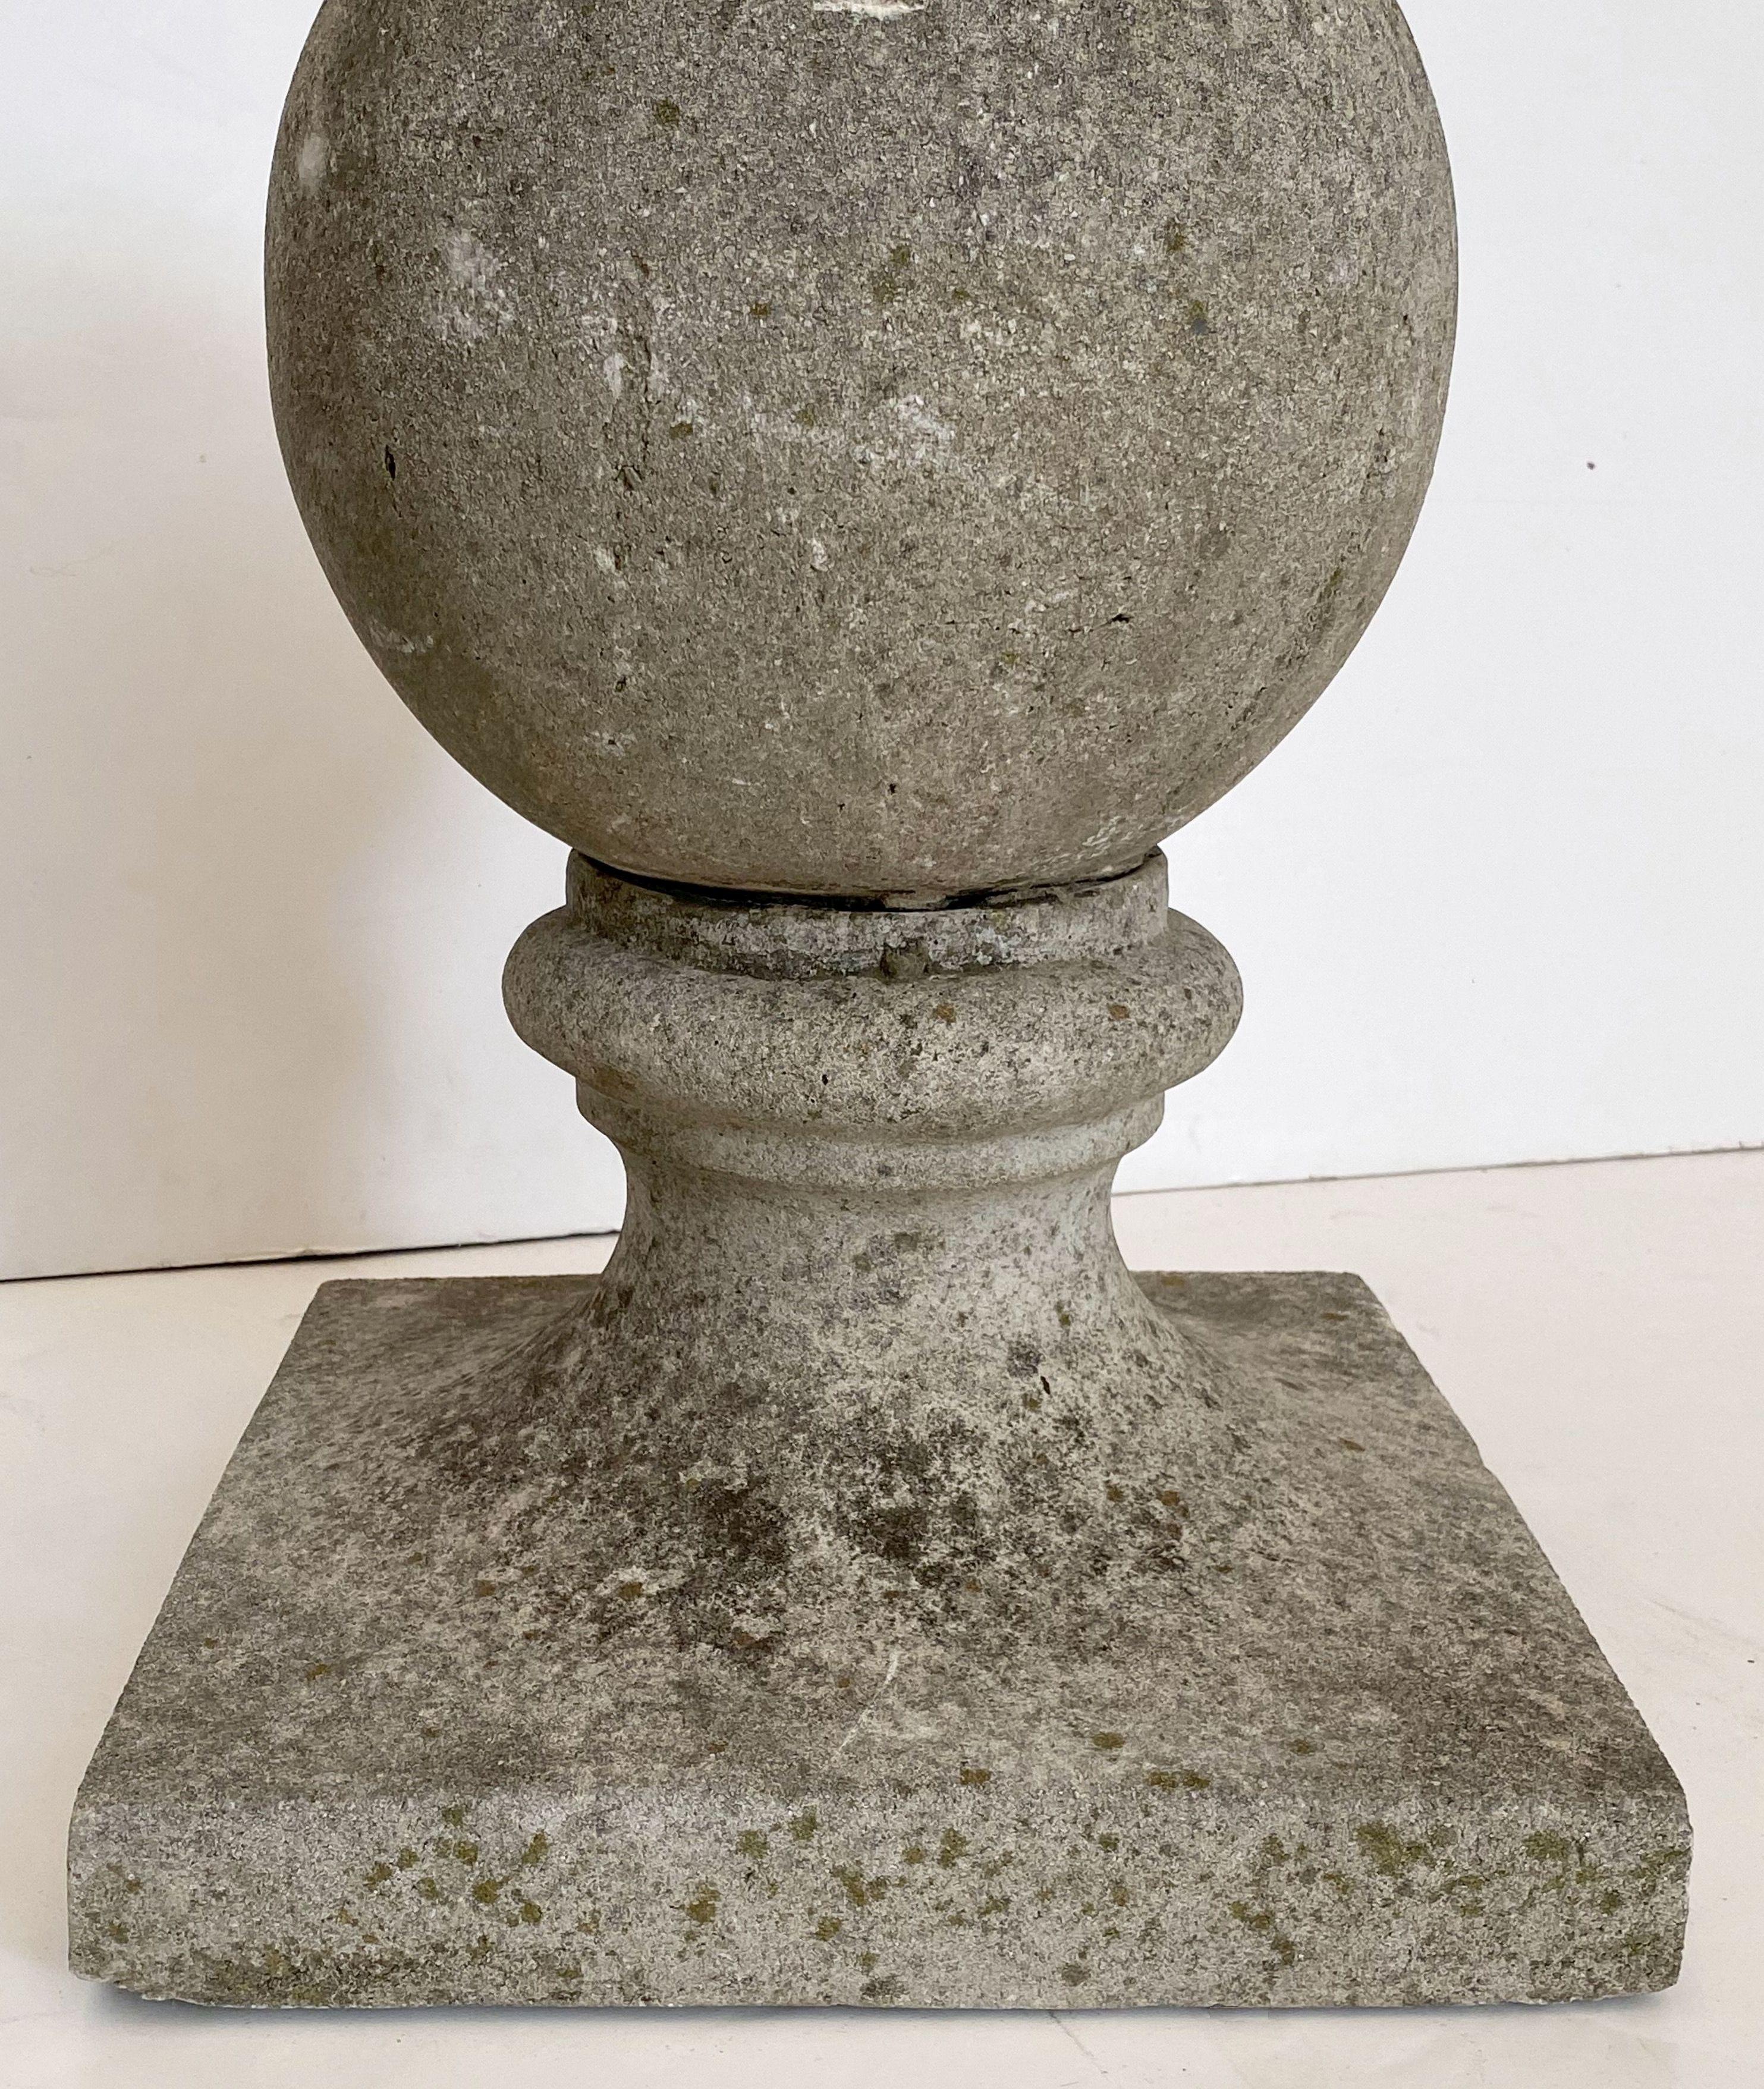 English Garden Stone Coping Balls 'Individually Priced' 3